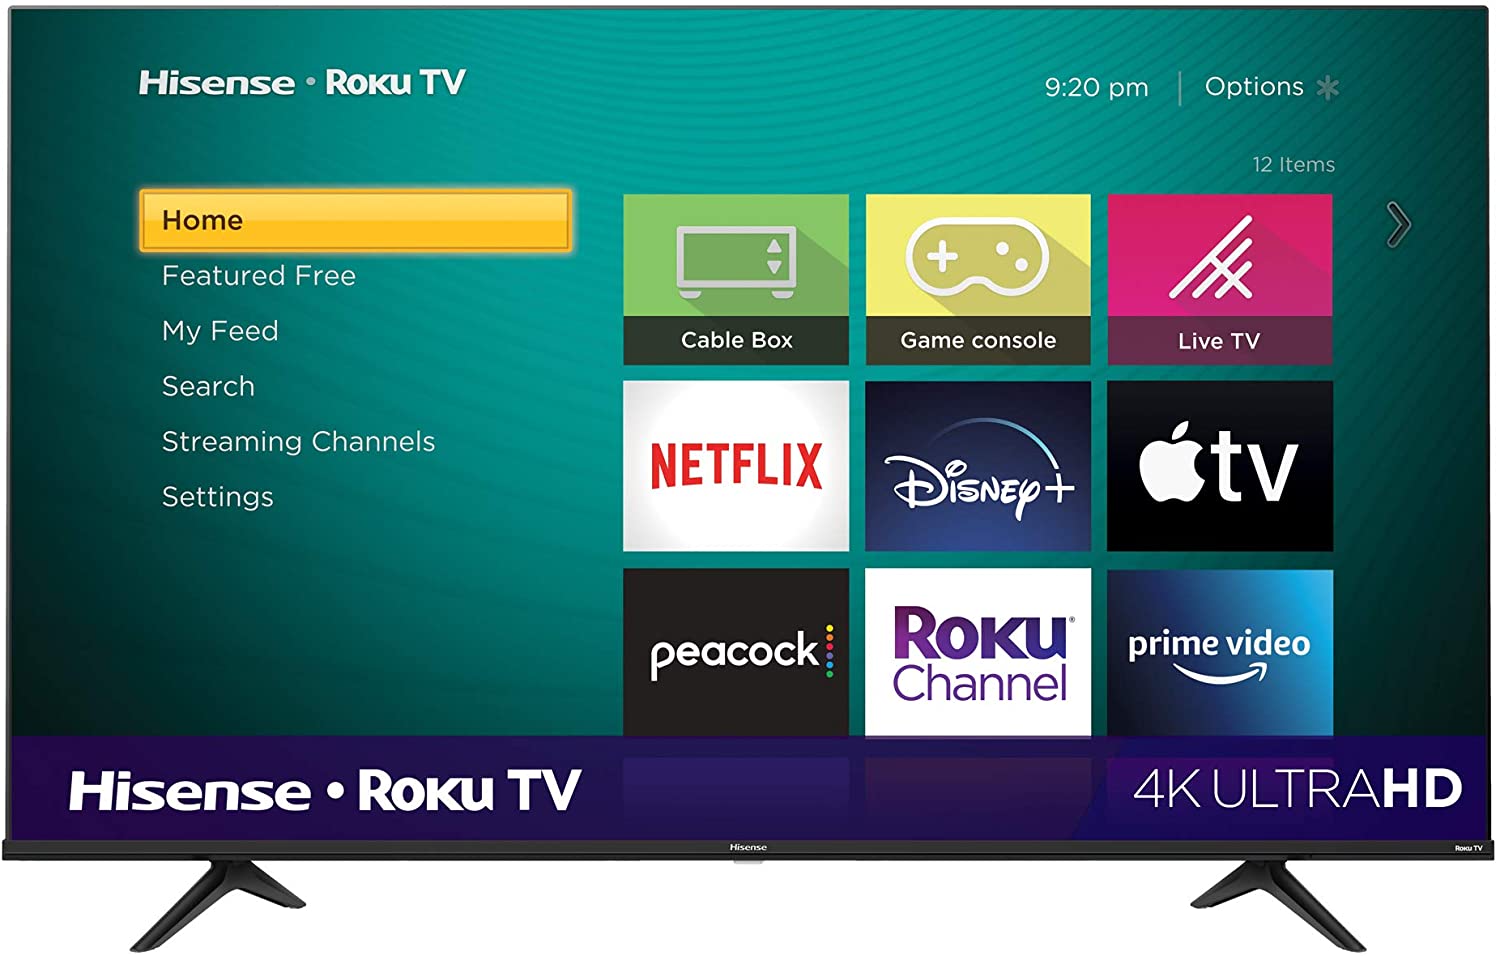 65" Hisense 65R6G 4K UHD HDR Roku Smart TV with Alexa $450 + free s/h at Amazon